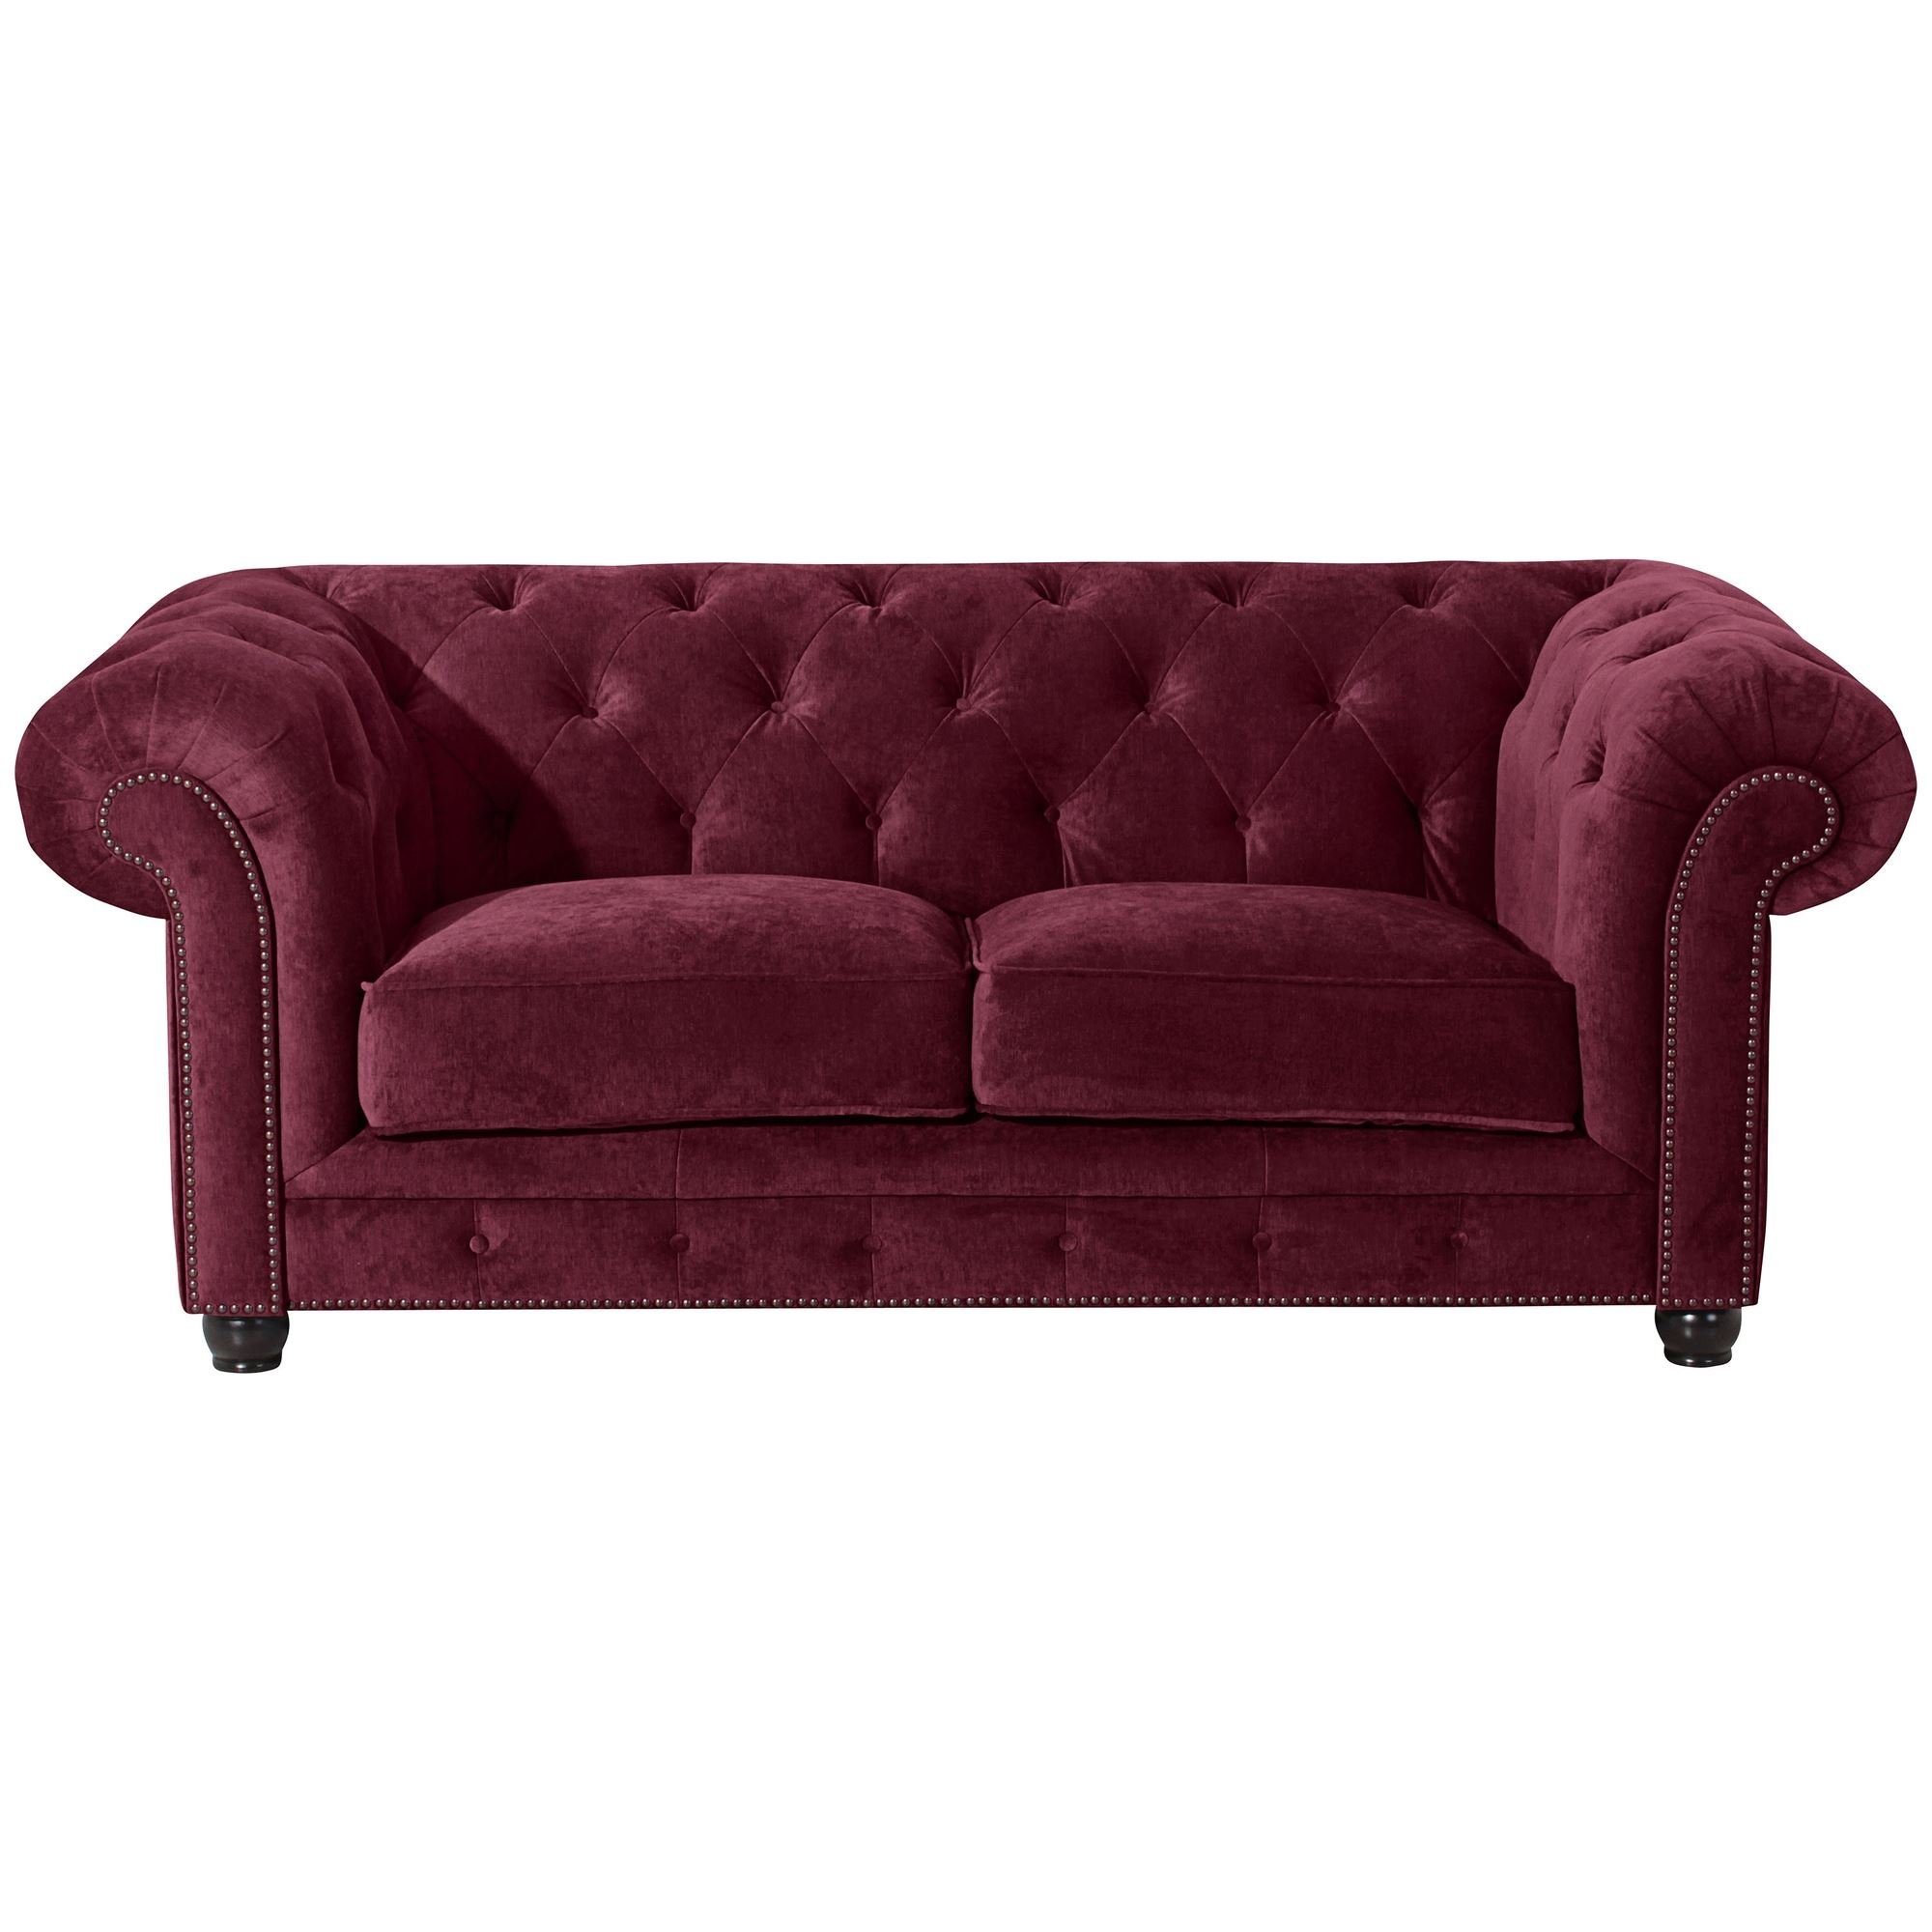 Teile, Versand Kessel Microfaser Sofa Sofa Bezug 58 Sitz verarbeitet,bequemer aufm hochwertig Sparpreis inkl. 1 Kostenlosem 2-Sitzer Kathe nussbau, Buche